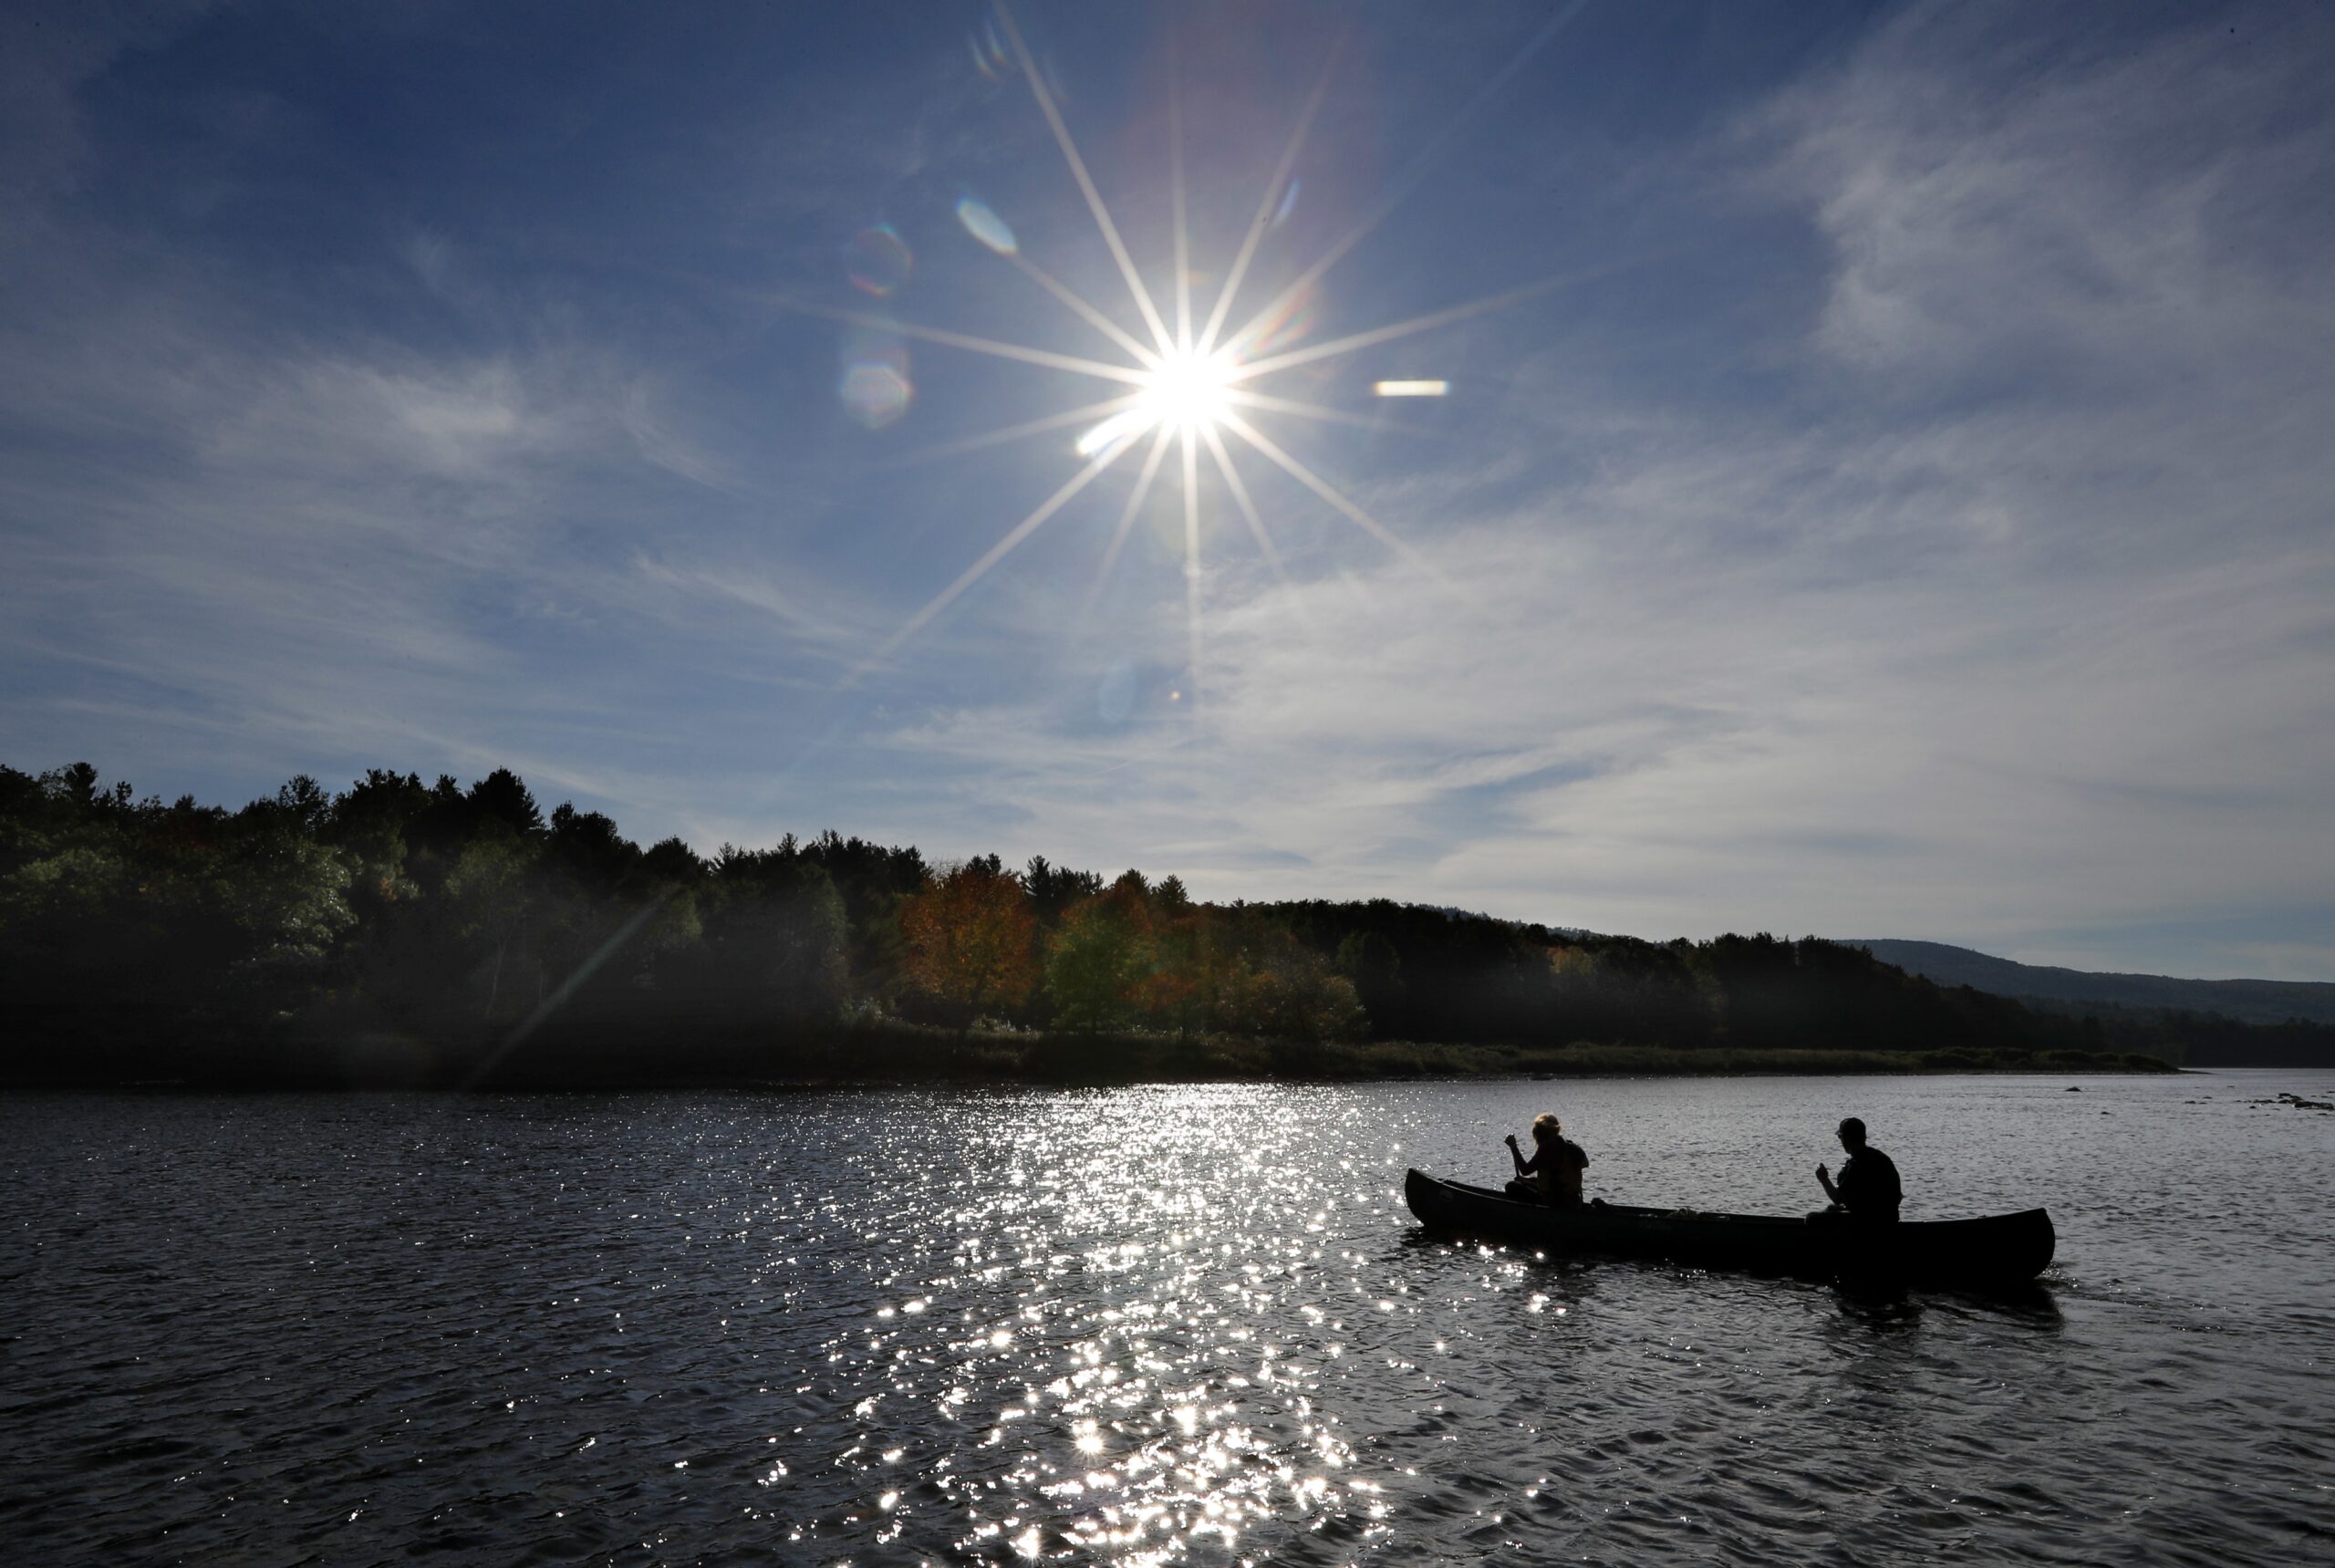 Canoe on lake in fall